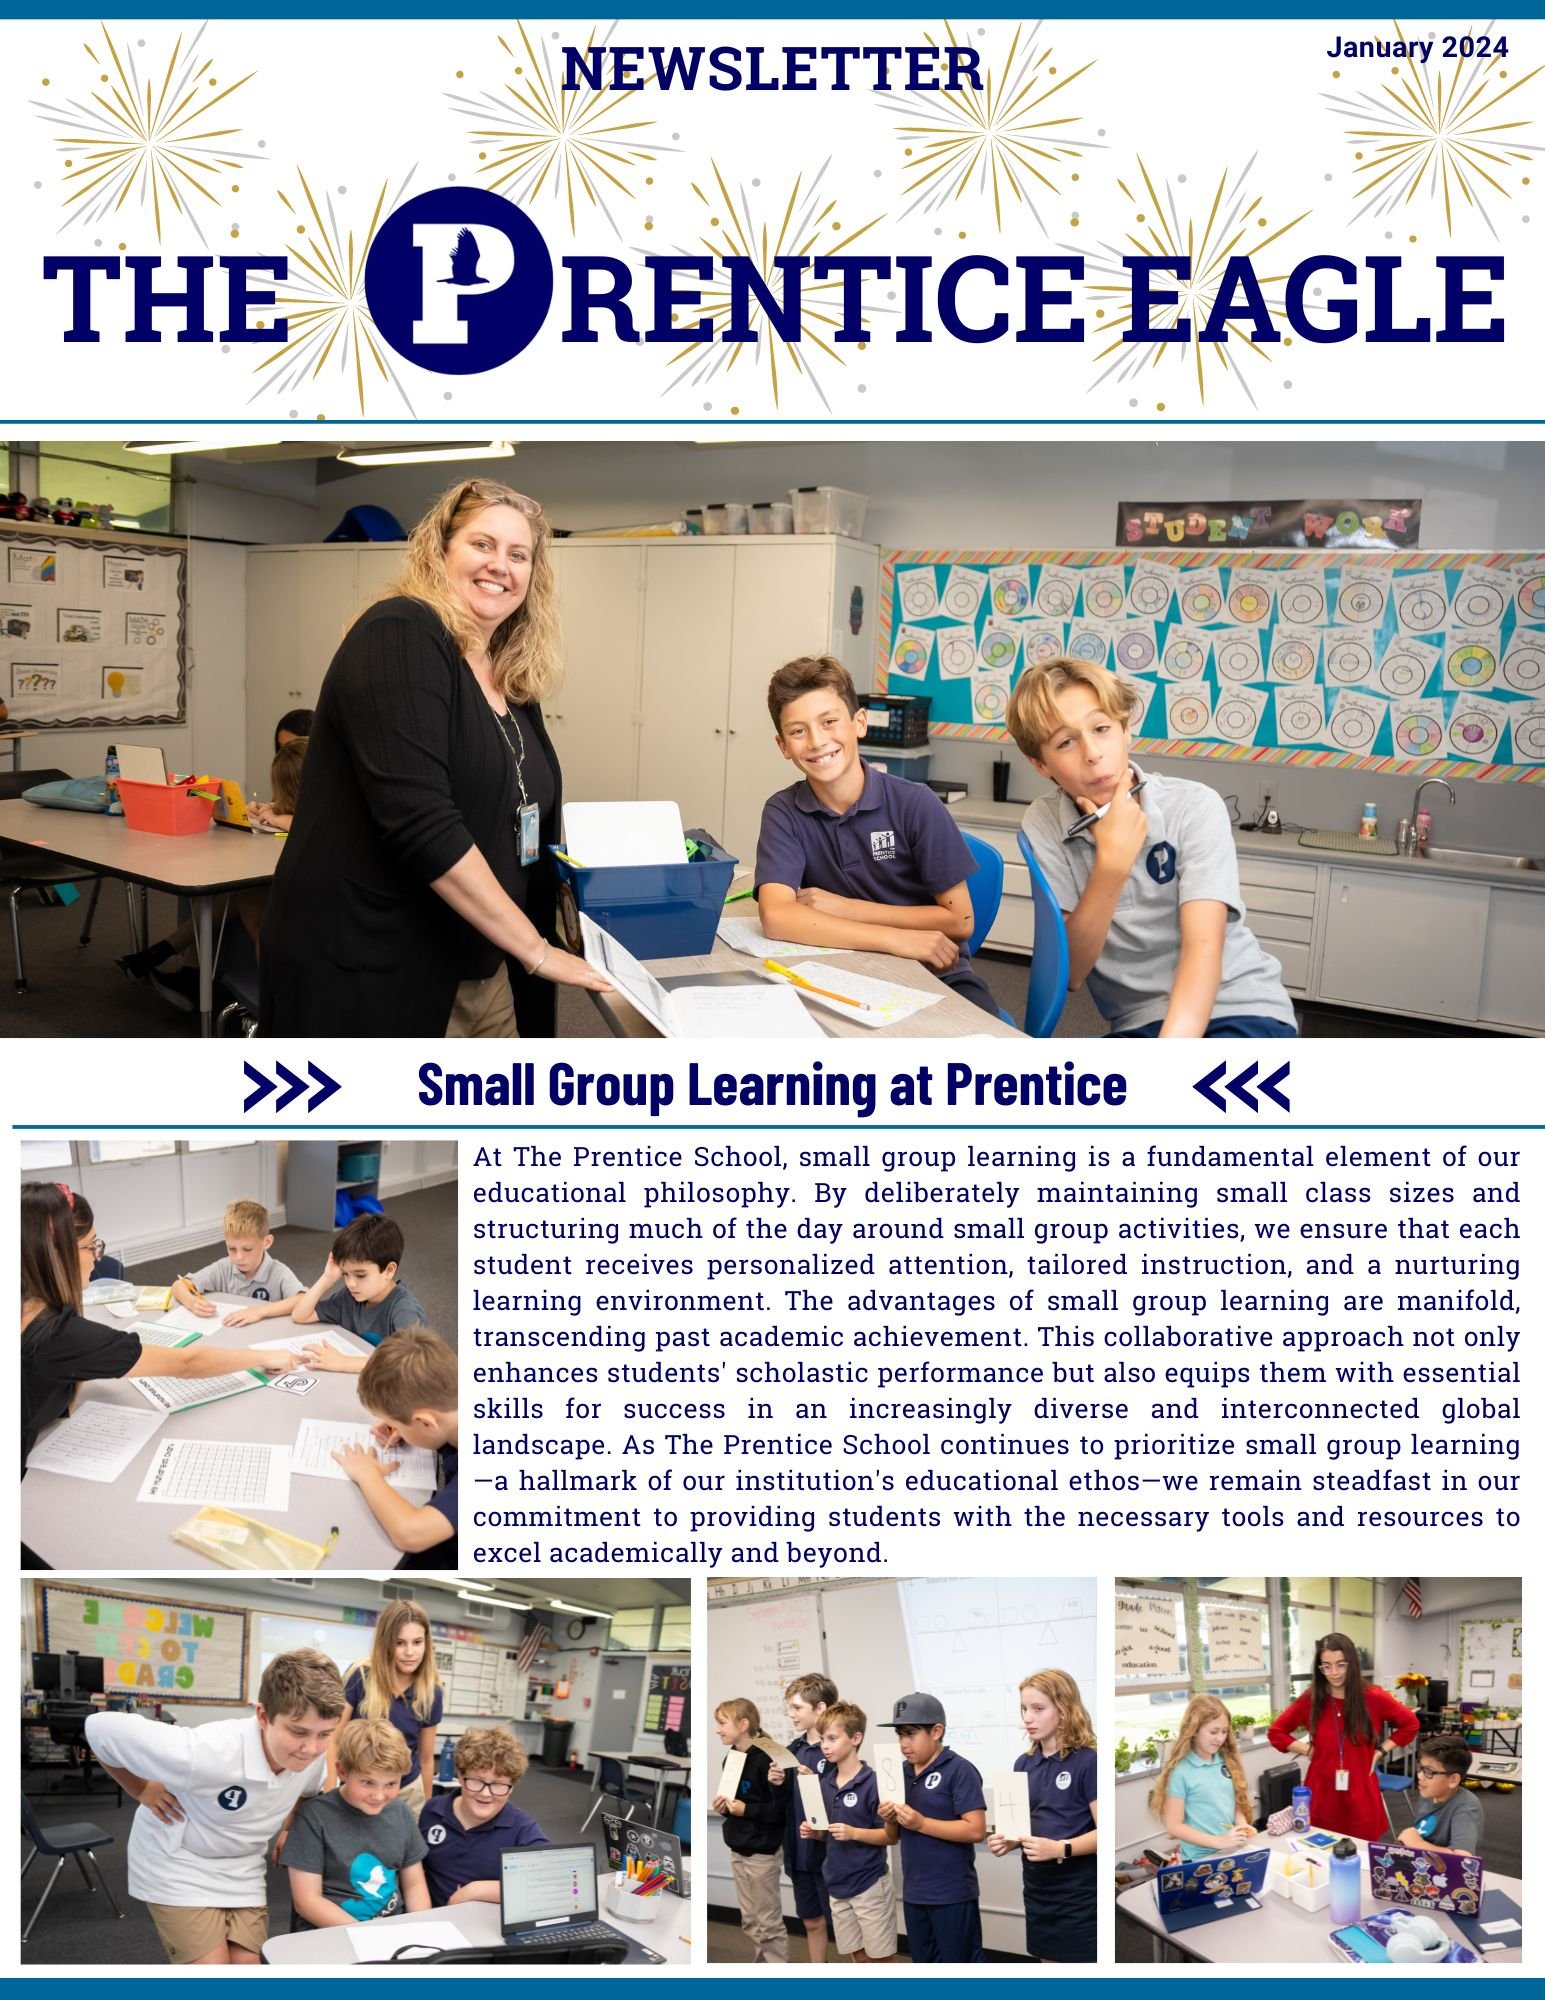 The Prentice Eagle Jan 24